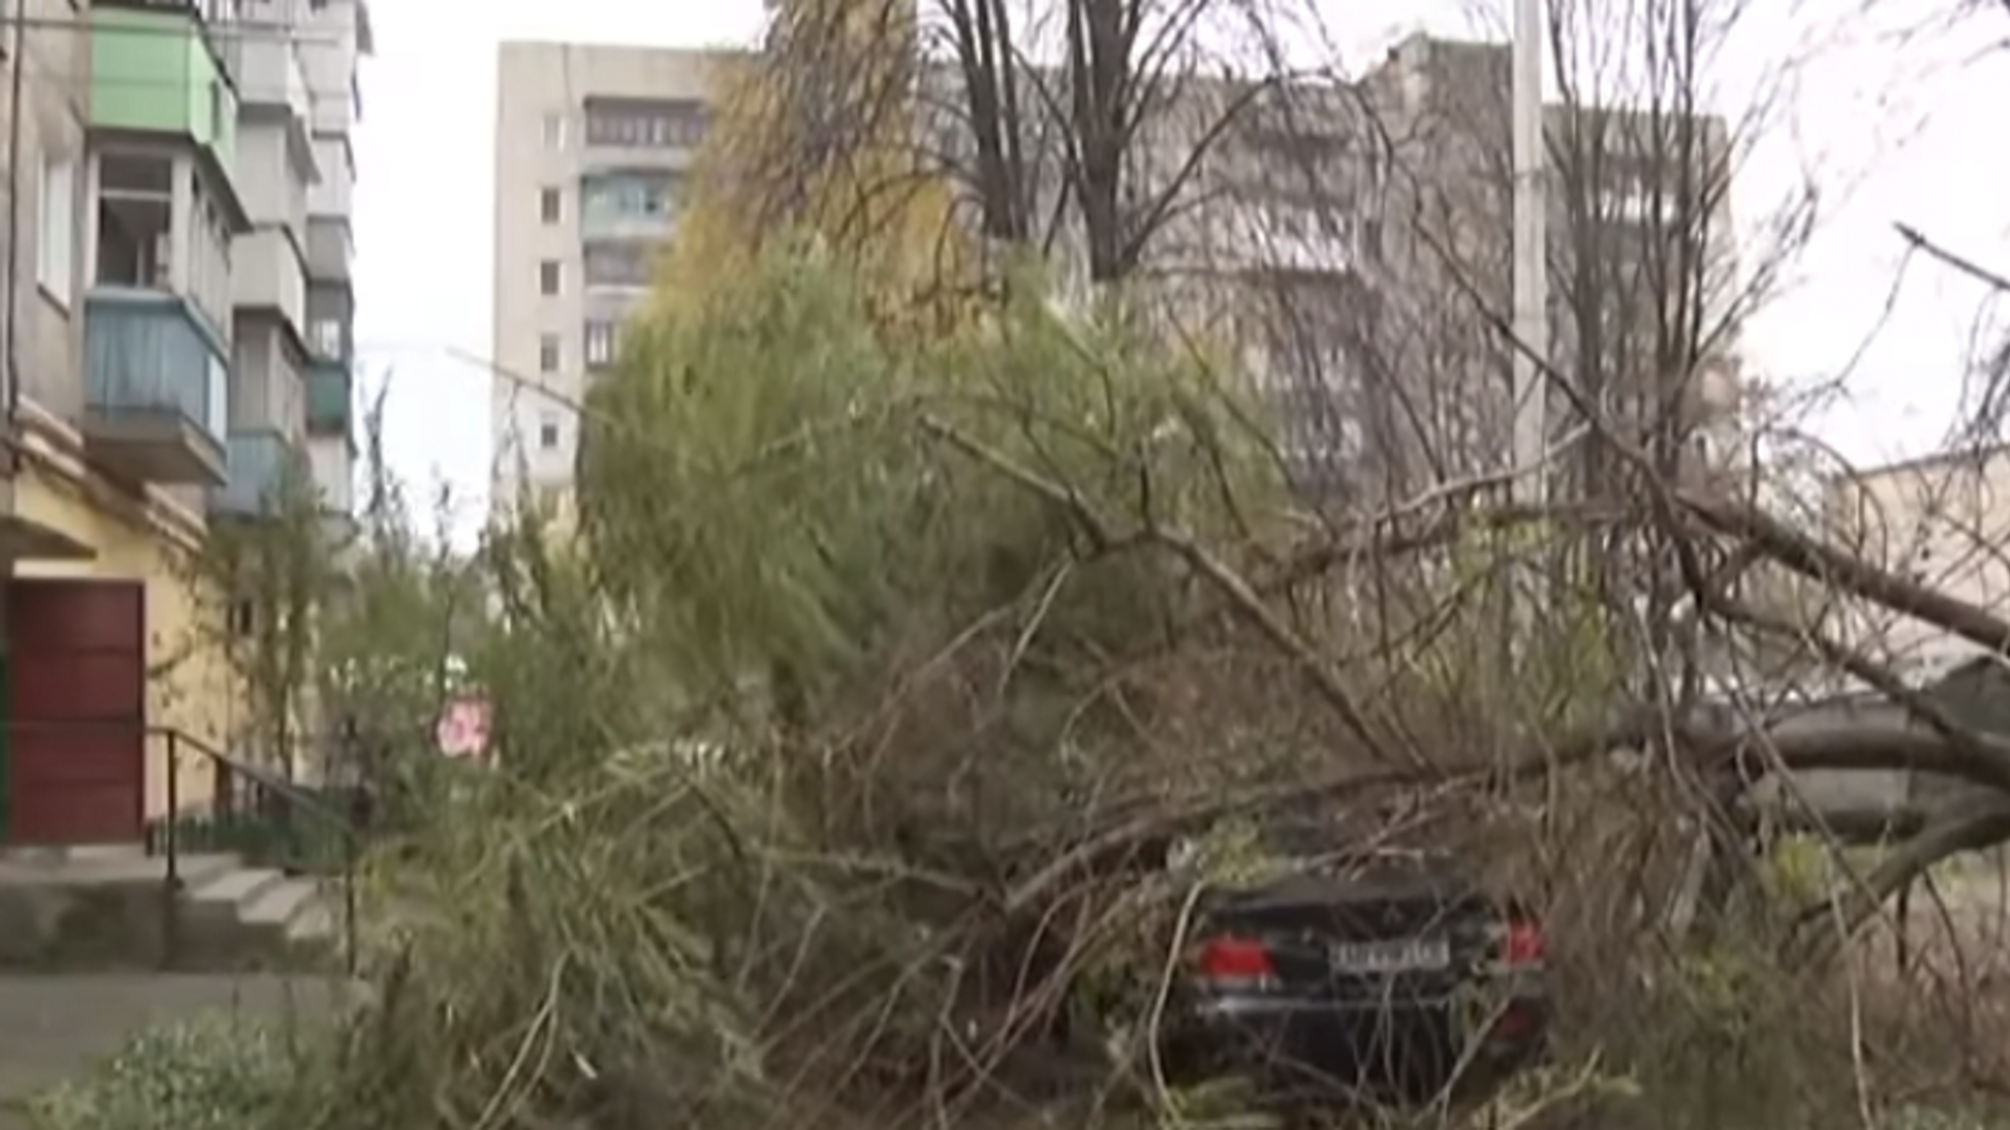 У Вінниці сильний вітер здув три зупинки і повалив дерева: дивитися кадри з місця подій